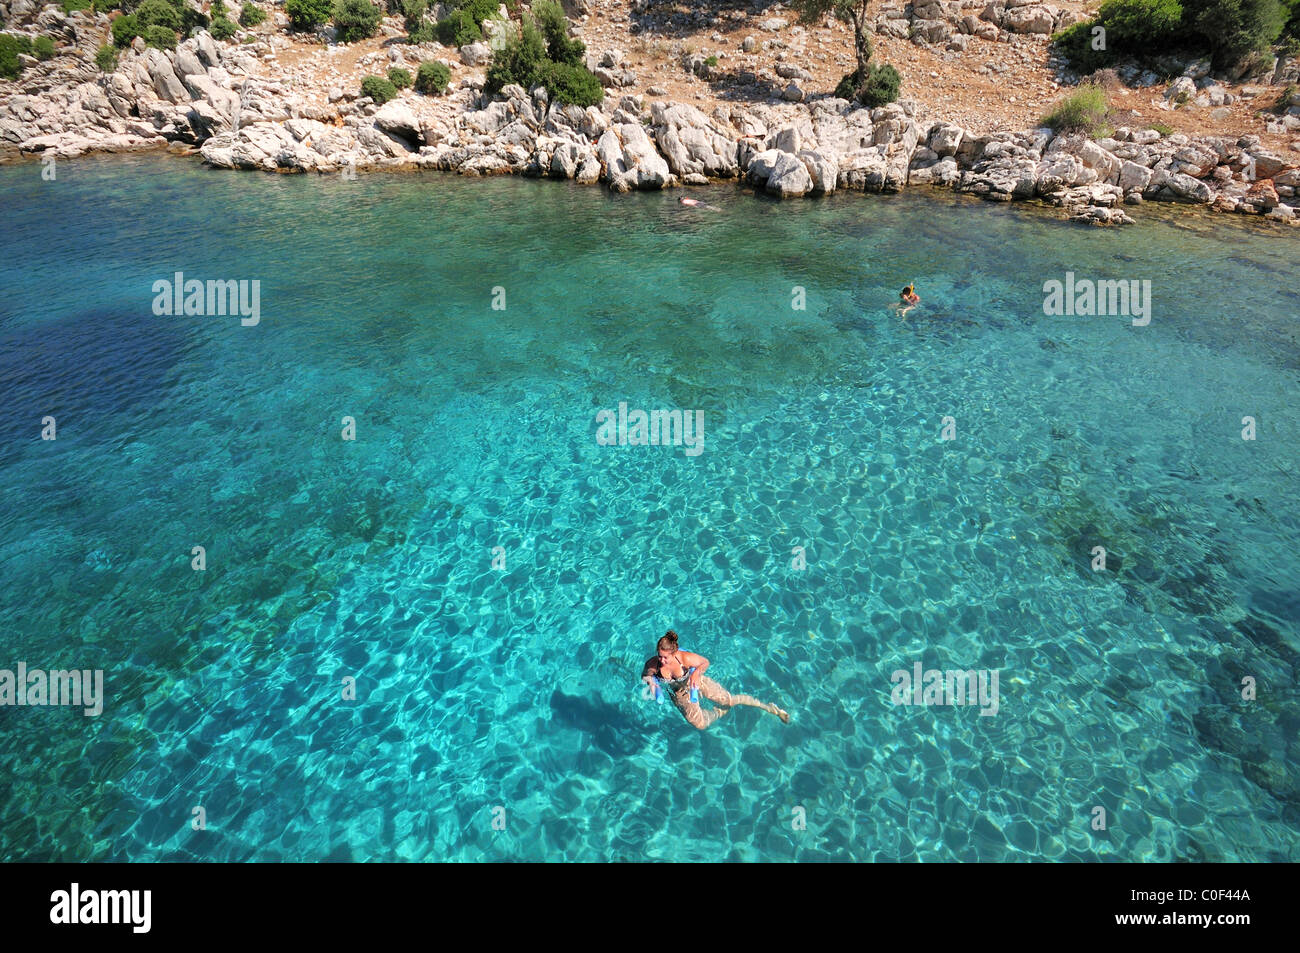 Une femme dans la belle crystal bleu-vert clair de la mer Egée, la Turquie, l'Europe Banque D'Images